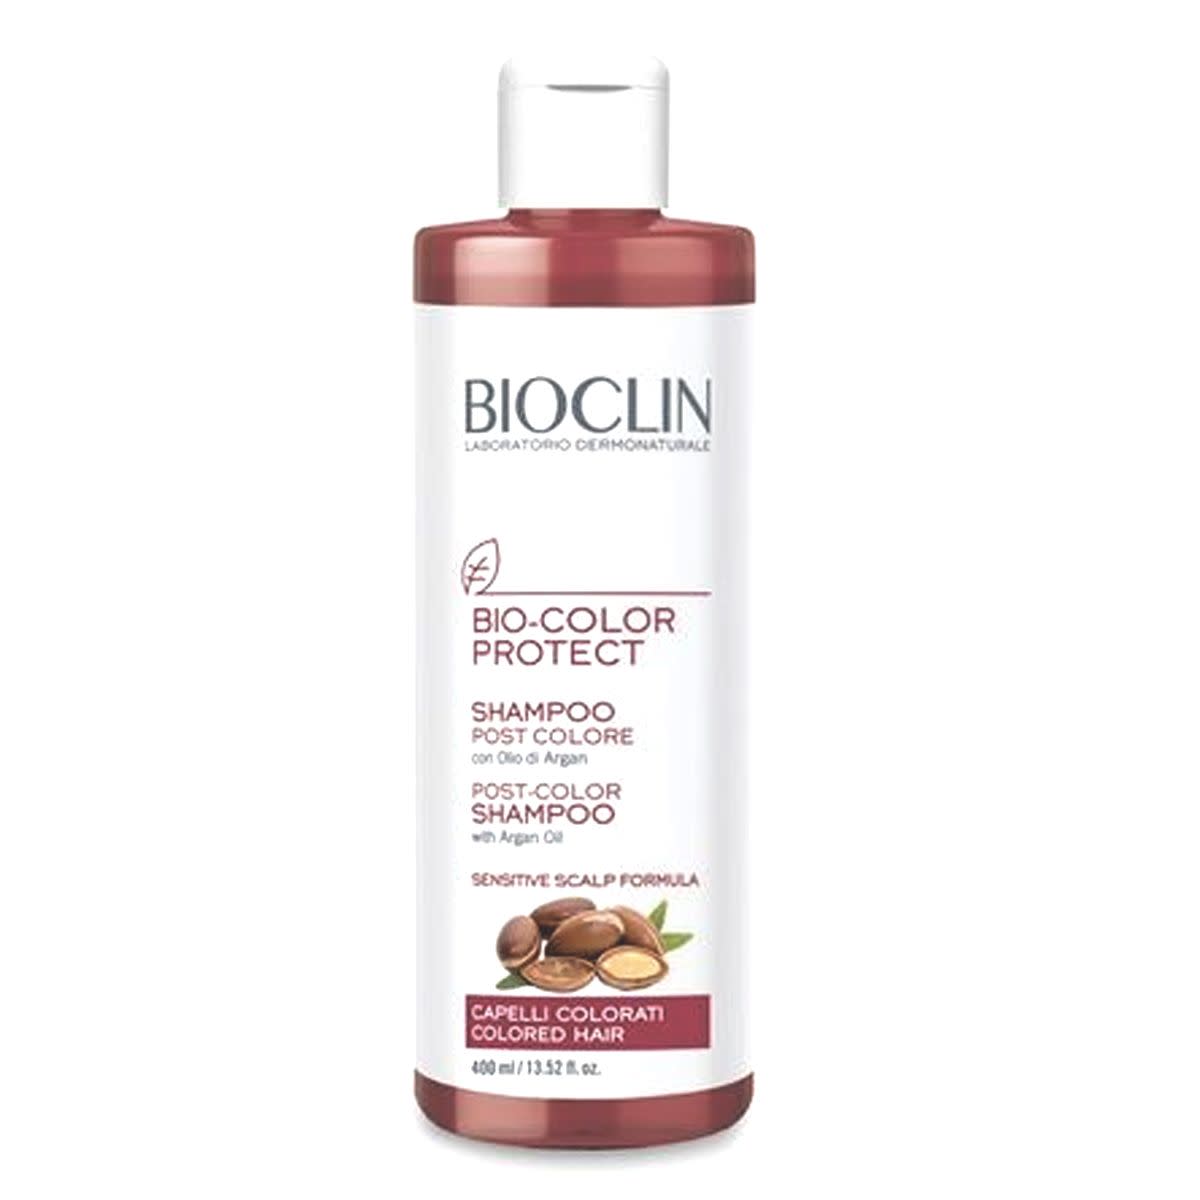 975025255 - Bioclin Bio Color Shampoo Post Colore 400ml - 4702580_2.jpg